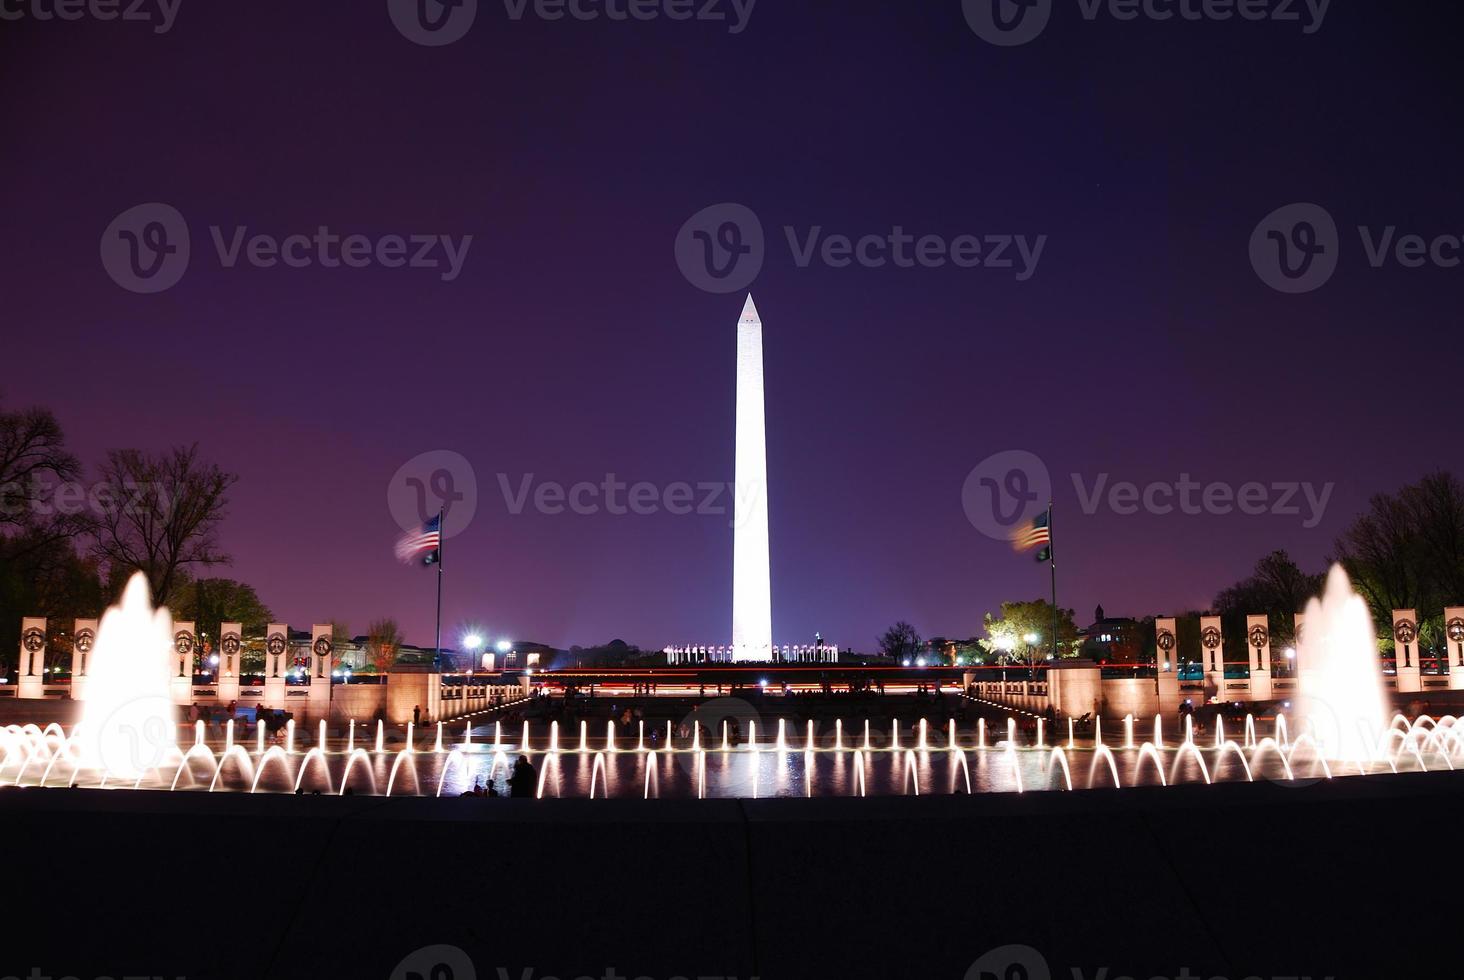 Washington DC. vista foto